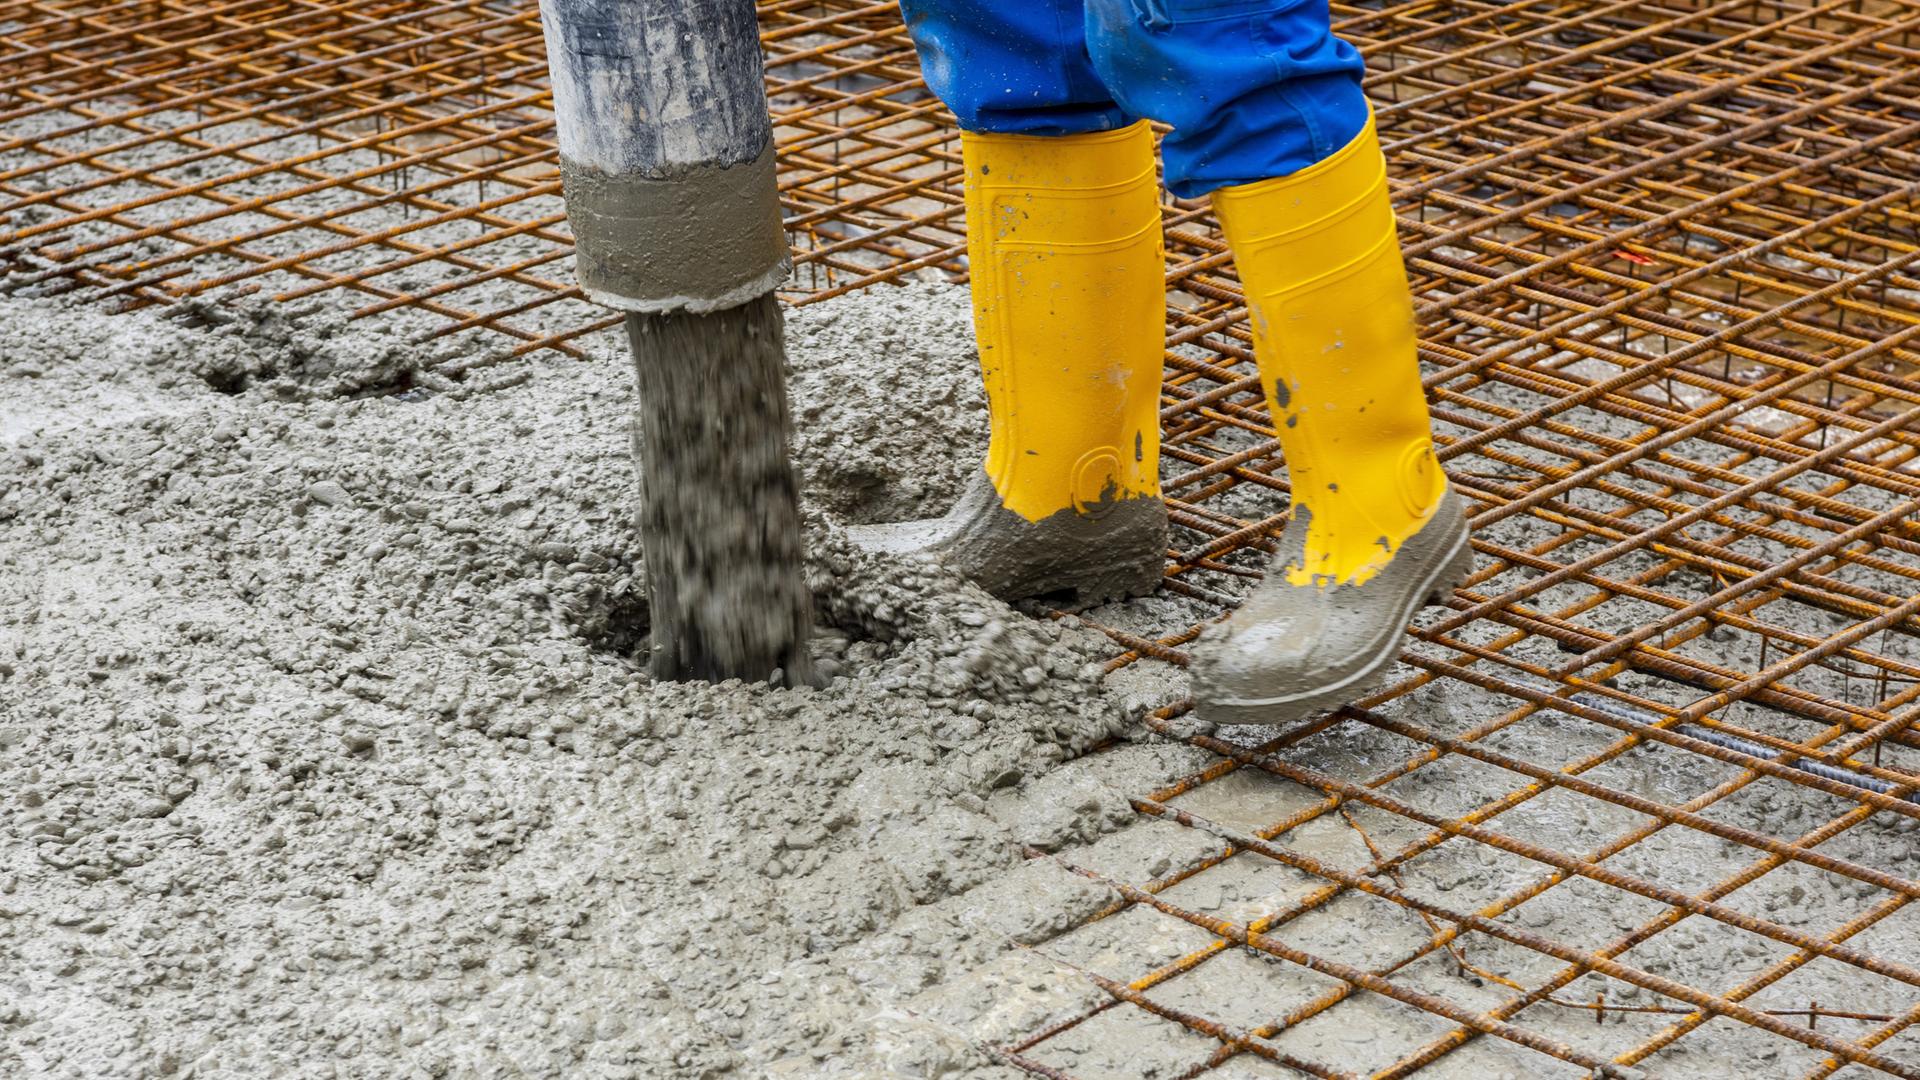 Zu sehen sind die Füße in gelben Gummistiefeln eines Bauarbeiters, der Zement auf einem Boden verteilt